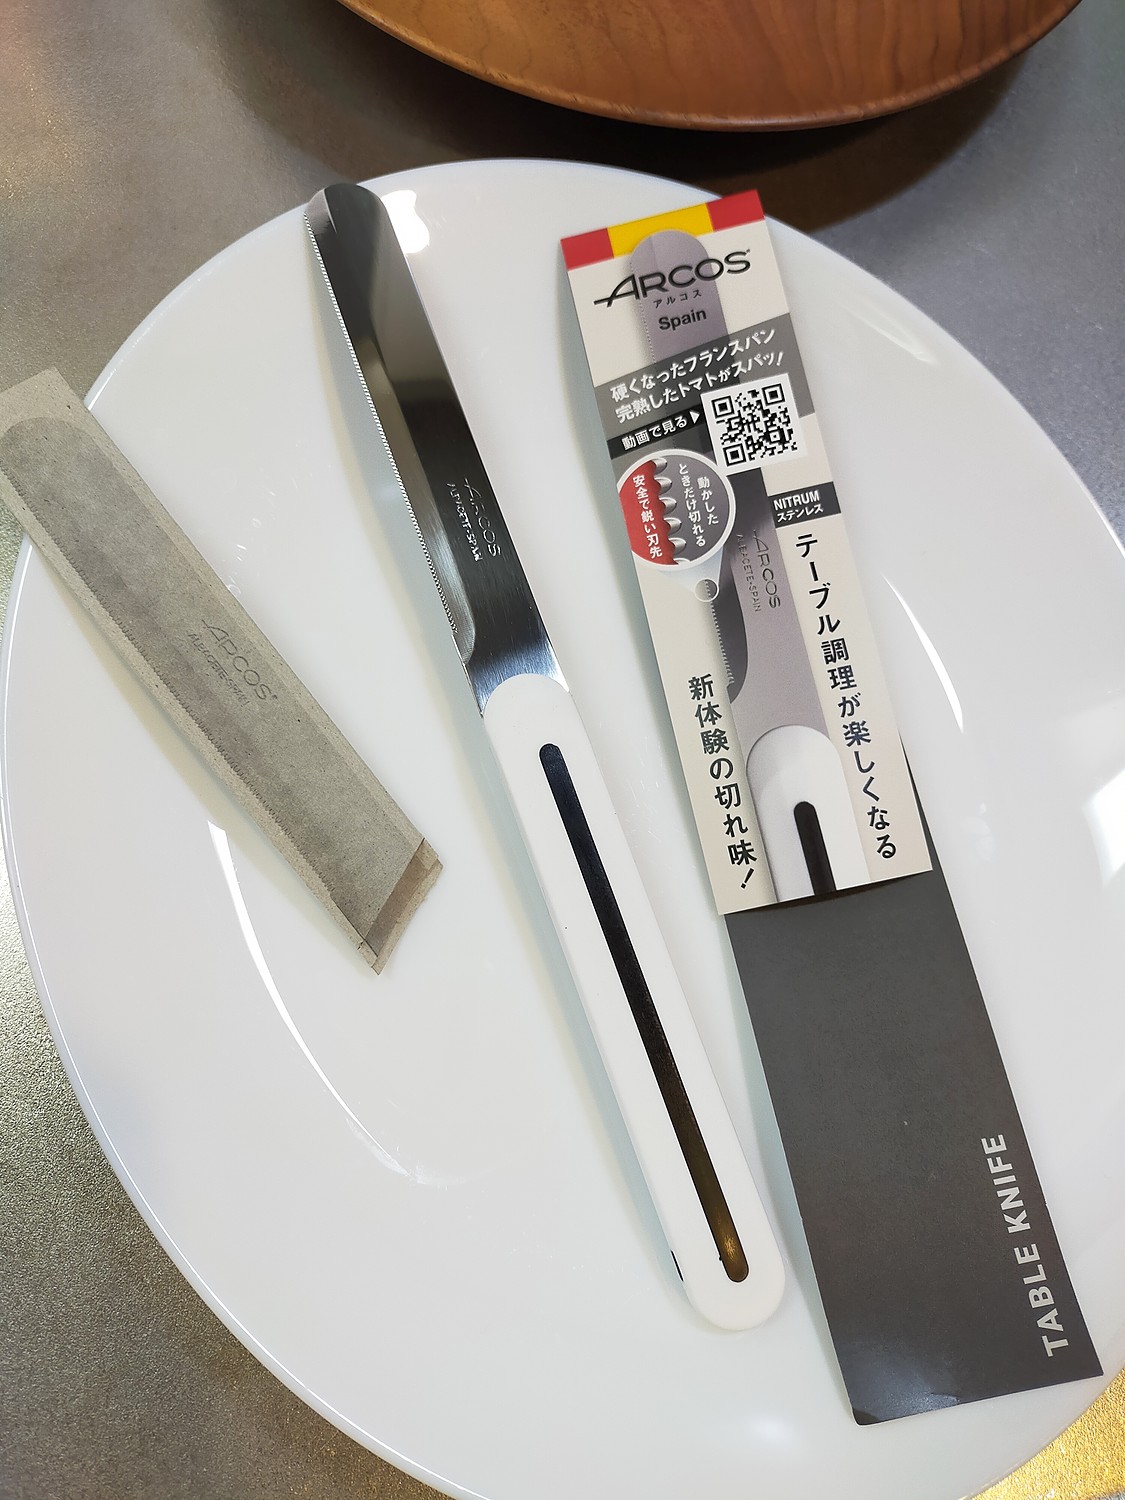 ARCOS ナイフ アルコス テーブルナイフ スペイン製 キッチン 先丸 アウトドア ナイフ ペティナイフ 万能ナイフ